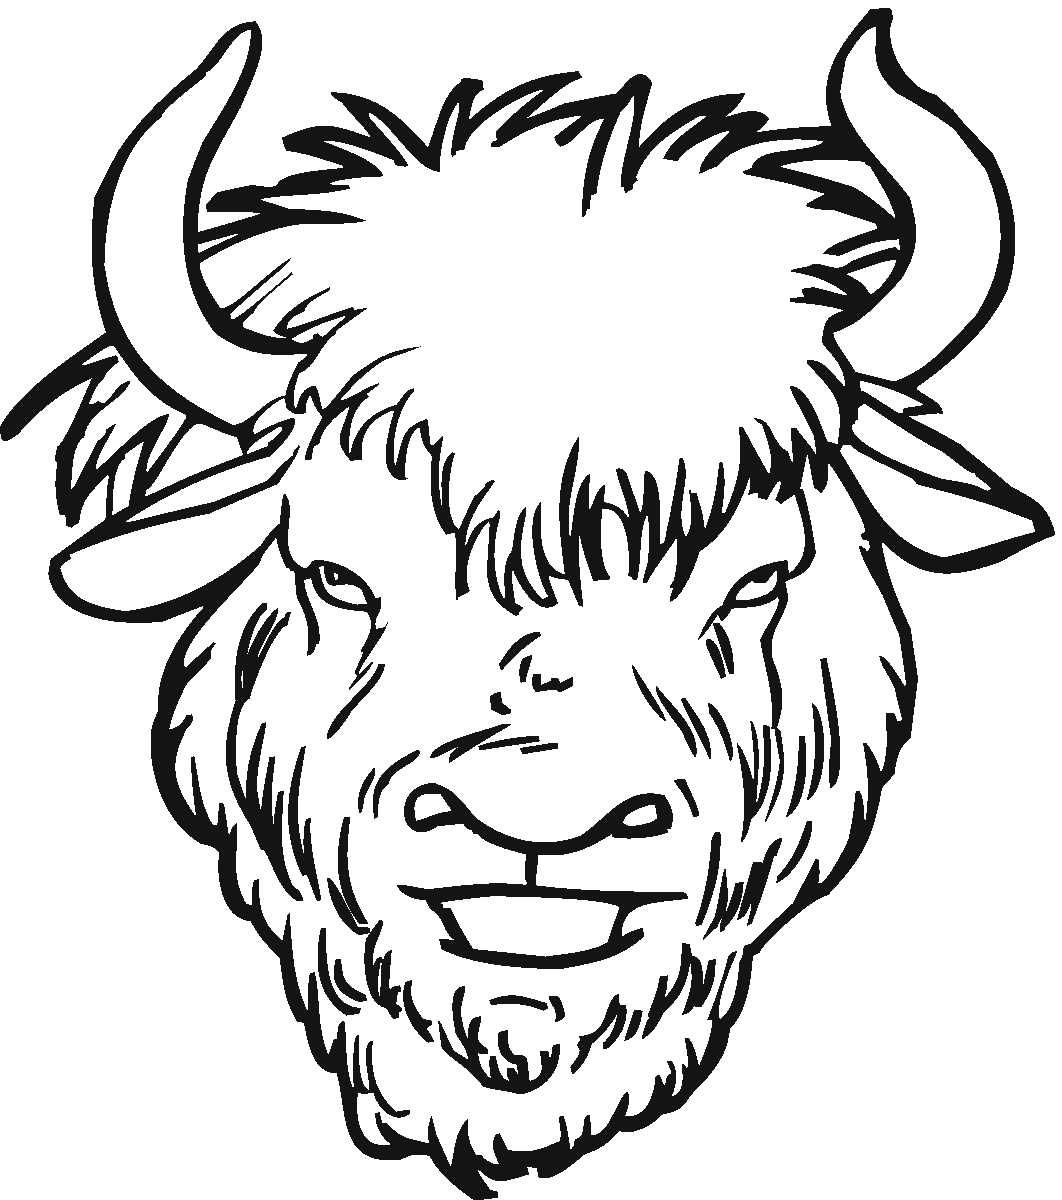 Bison head black and white design.